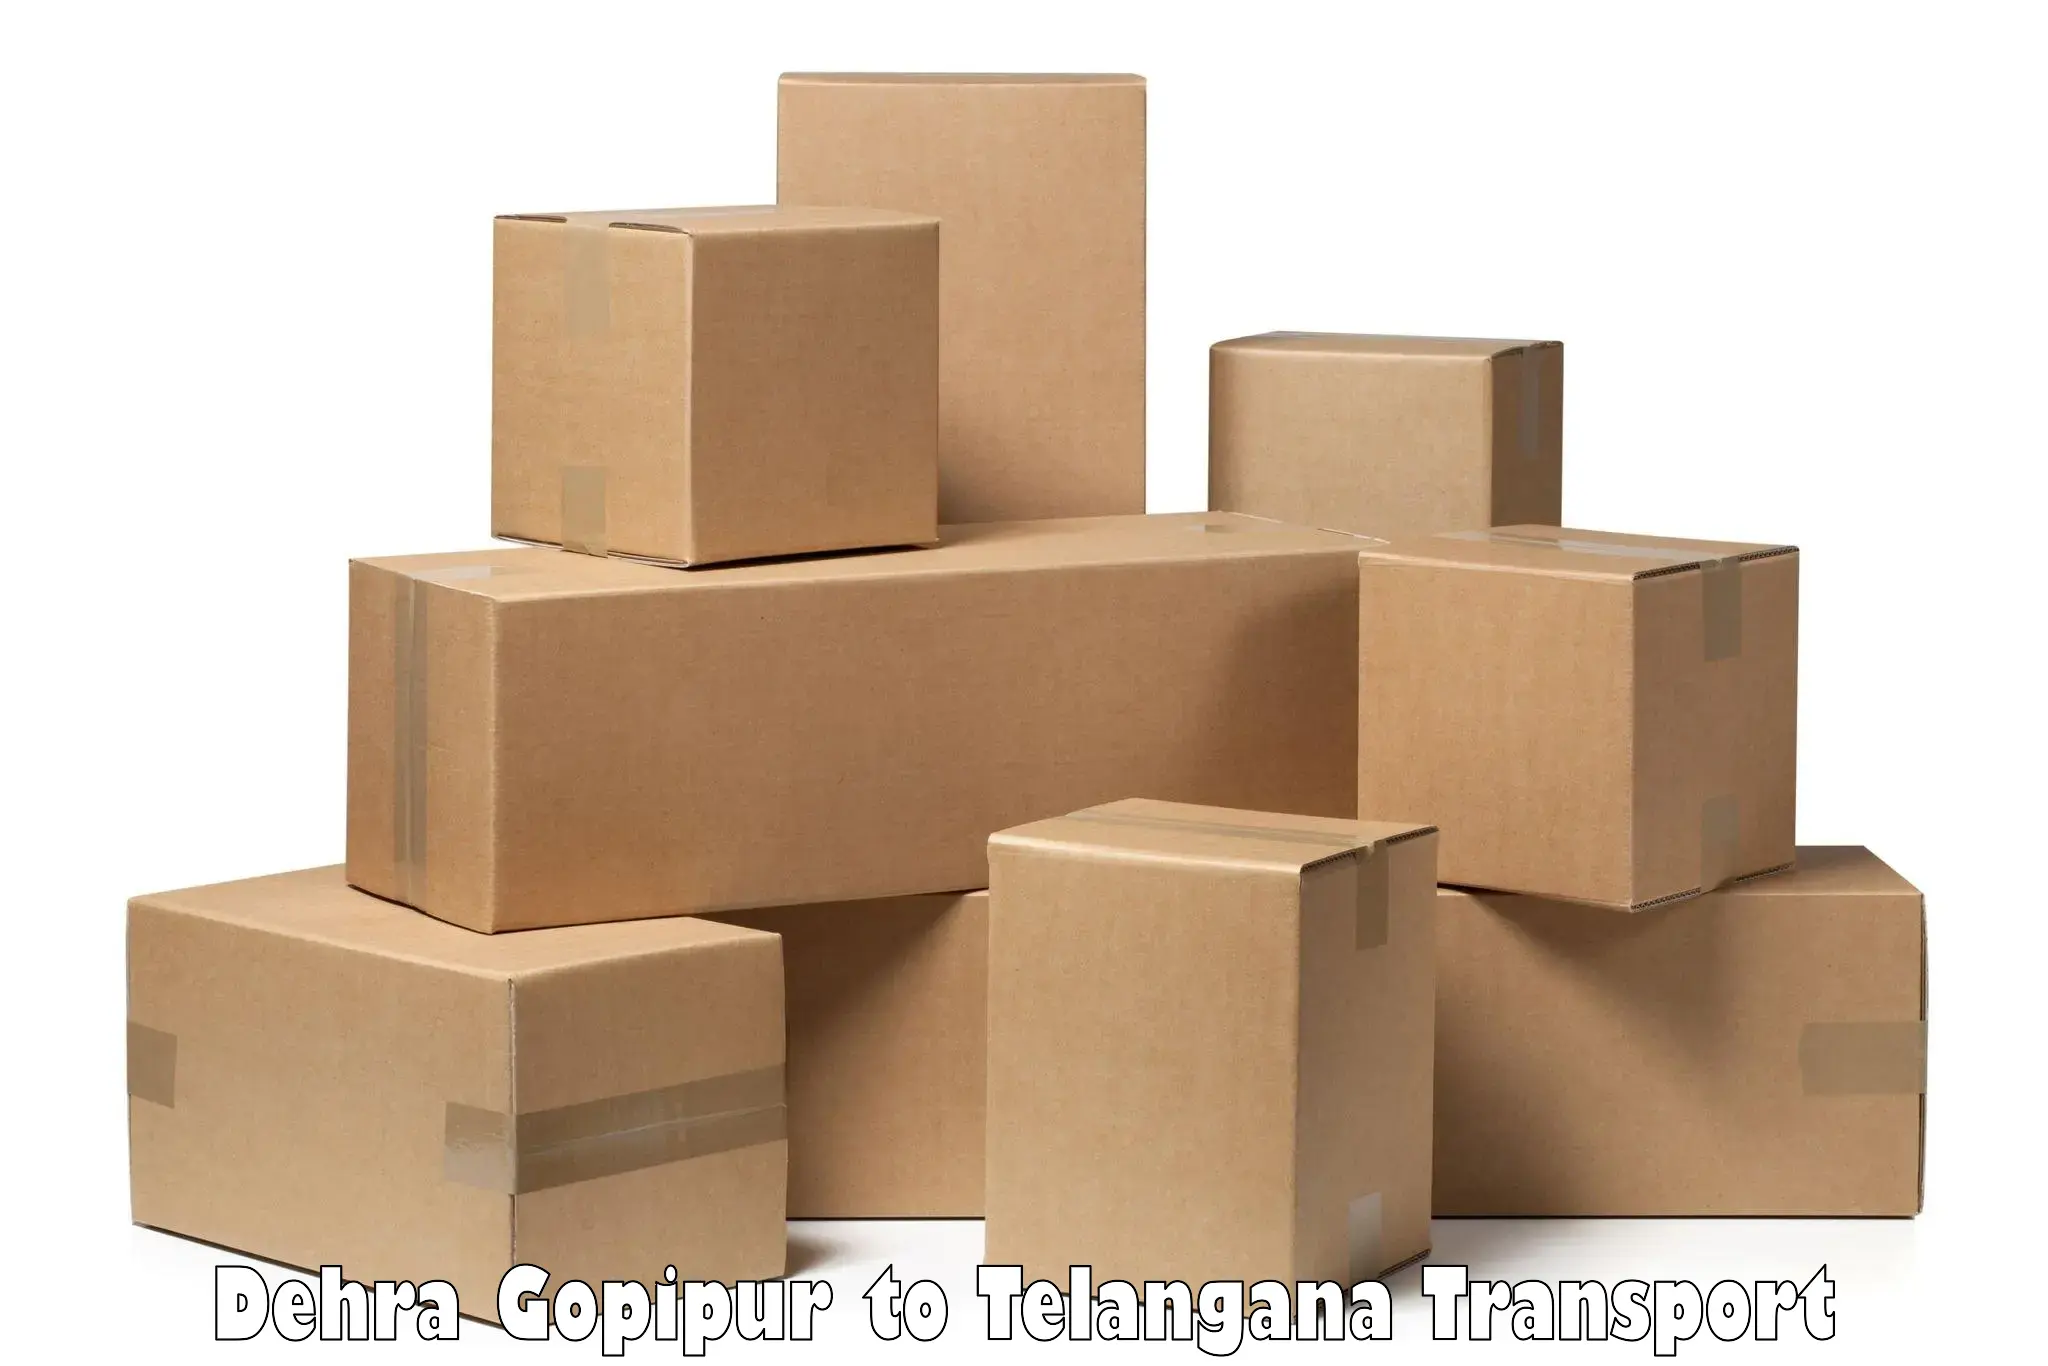 Goods delivery service Dehra Gopipur to Odela